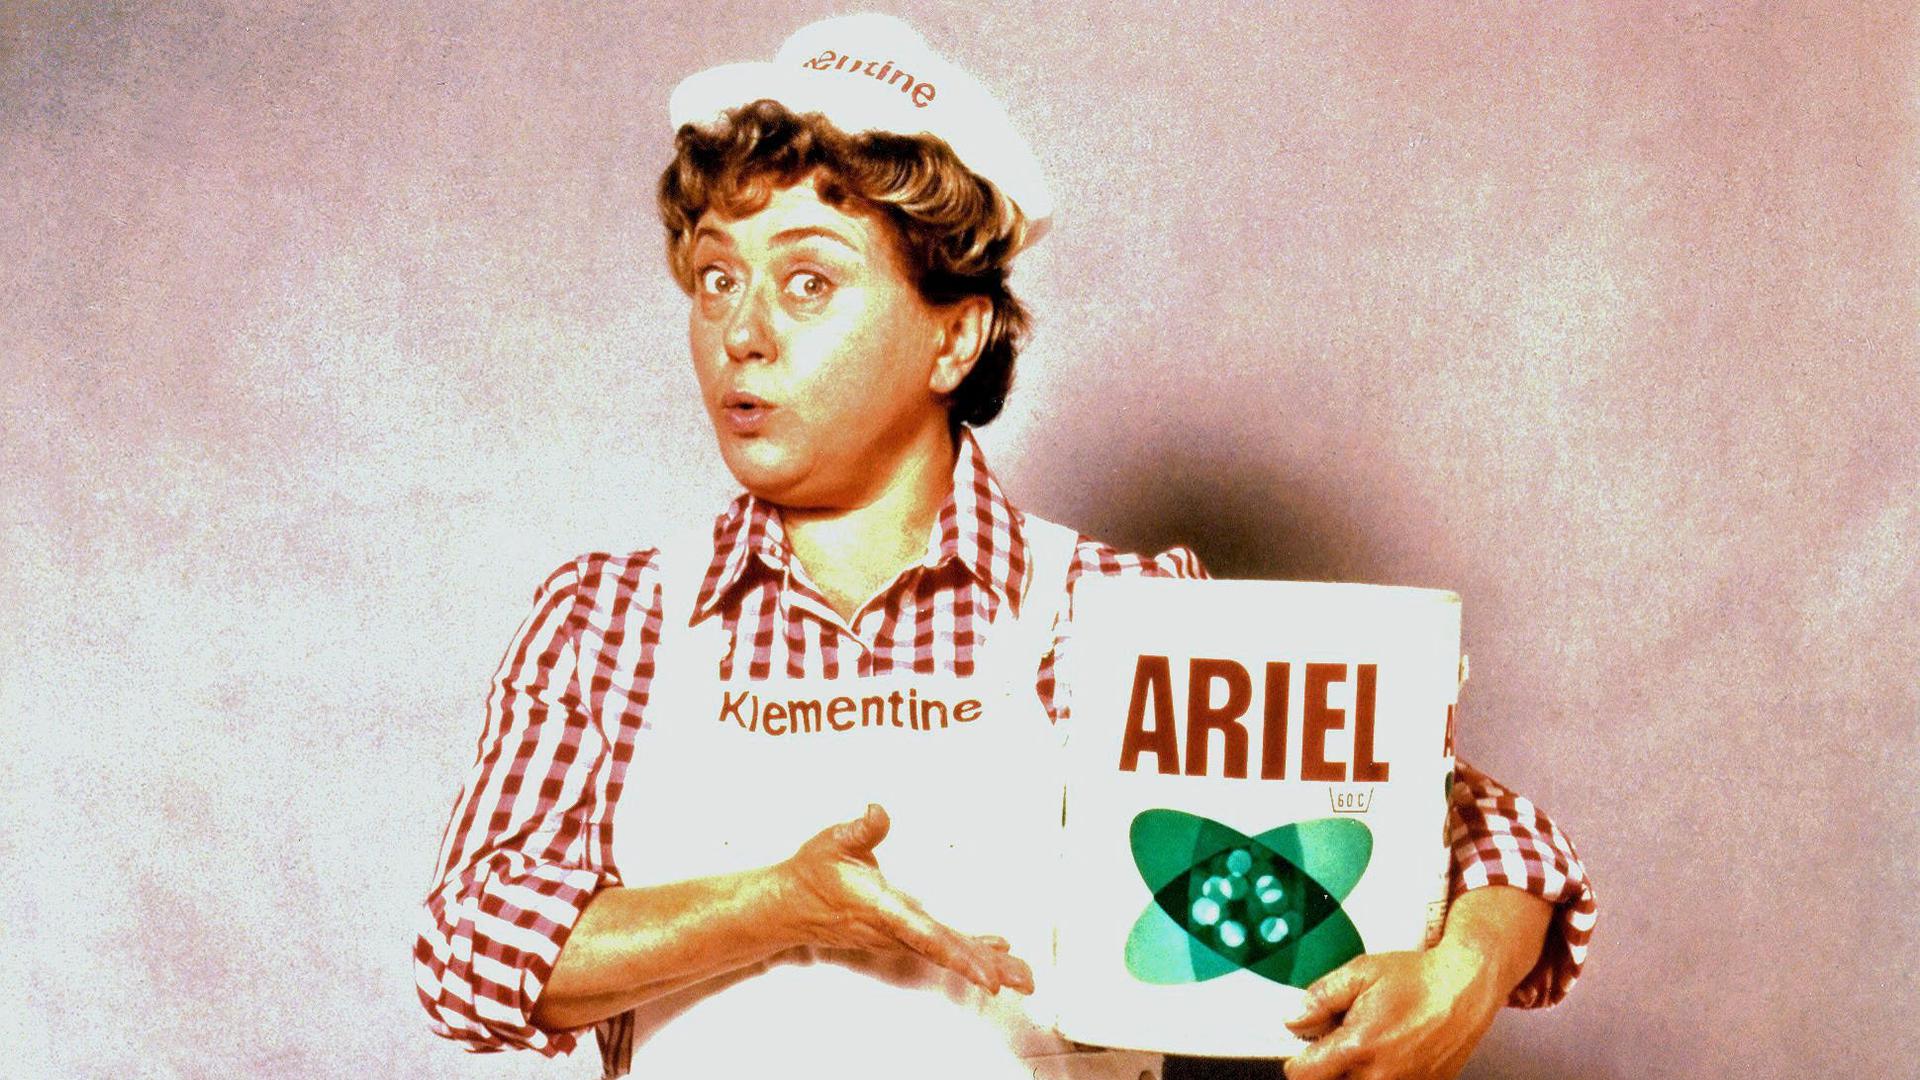 Seit 1968 wirbt die "Wasch-Expertin der Nation" und eine der bekanntesten Werbekultfiguren Deutschlands für Ariel und damit für "Wäsche, die nicht nur sauber, sondern rein ist". Foto: Ariel; Abdruck honorarfrei bei Quellenangabe.